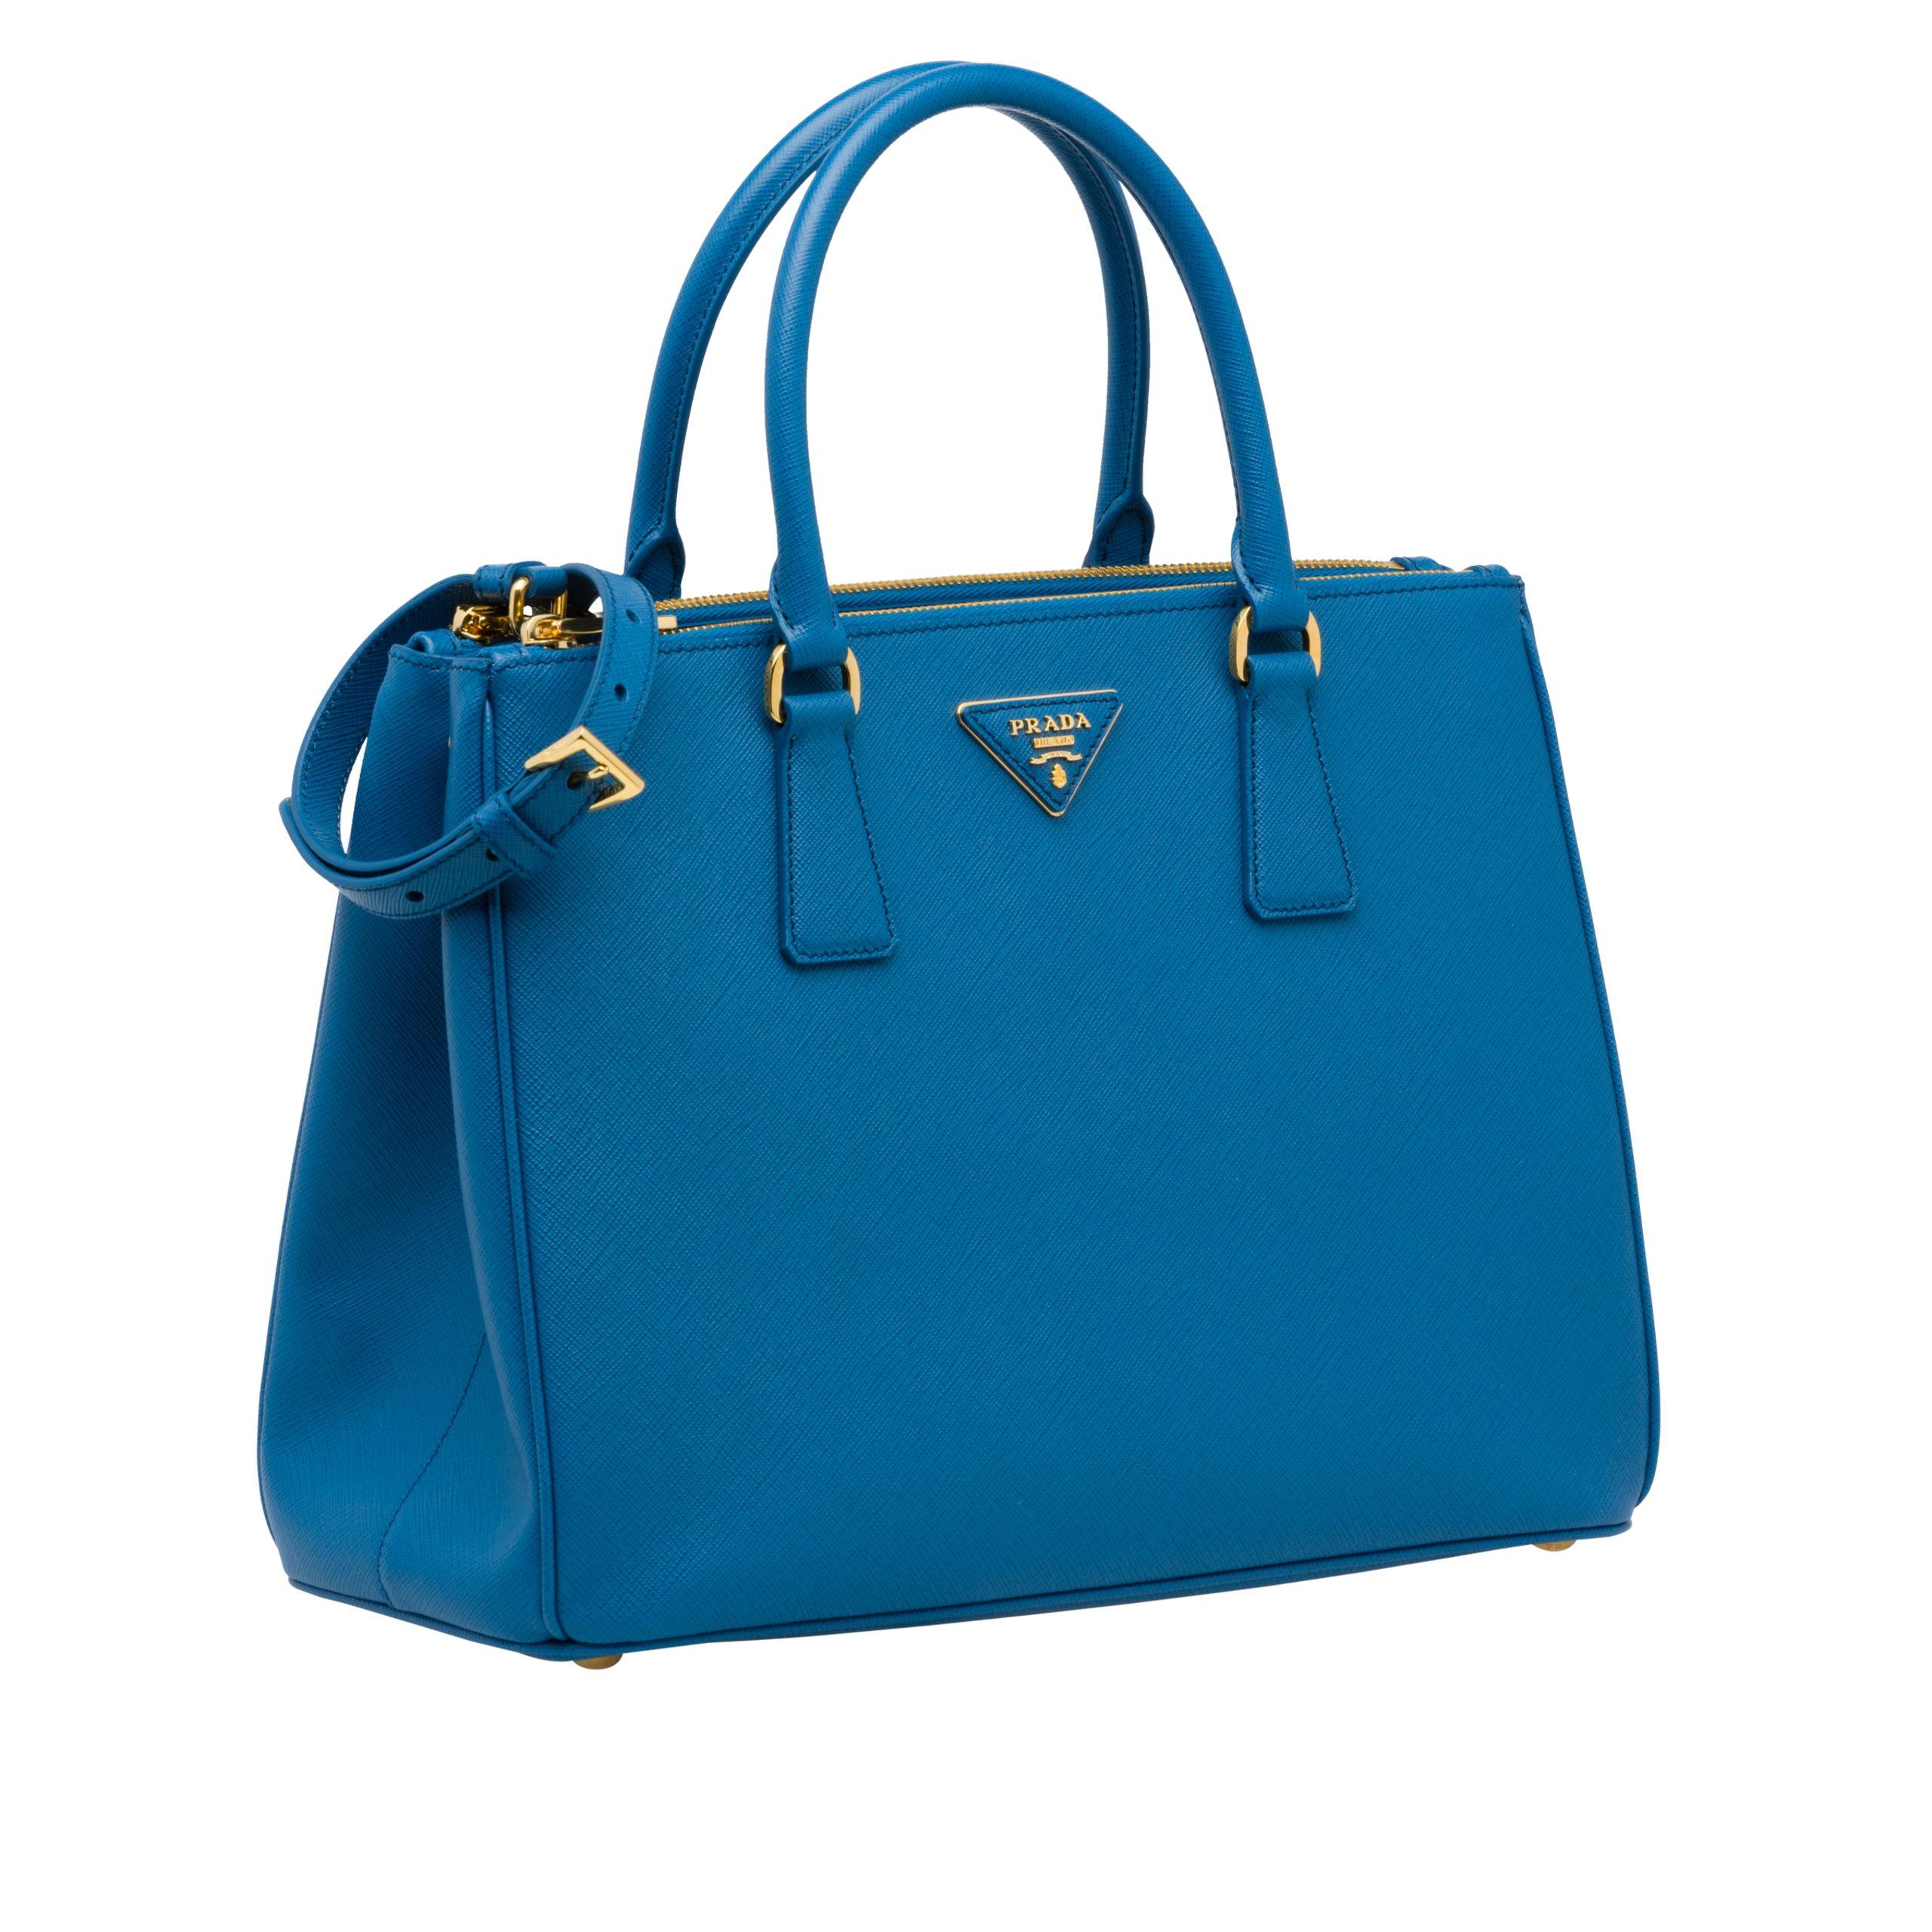 Prada Galleria Medium Saffiano Leather Bag in Blue - Lyst